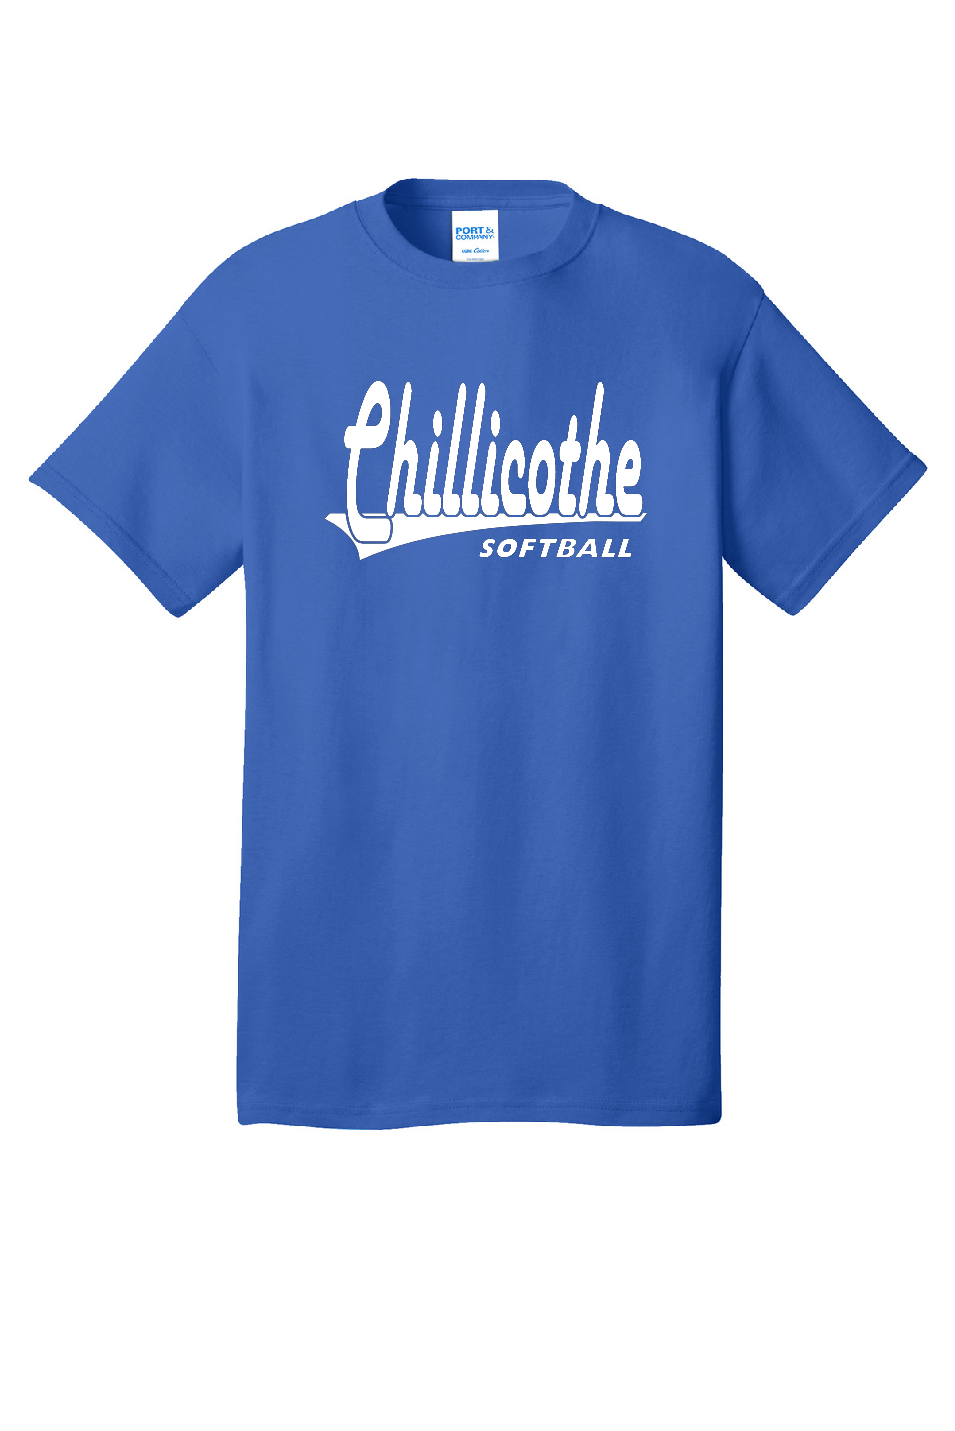 Vintage Chillicothe Softball Tee, Crewneck, and Hoodie